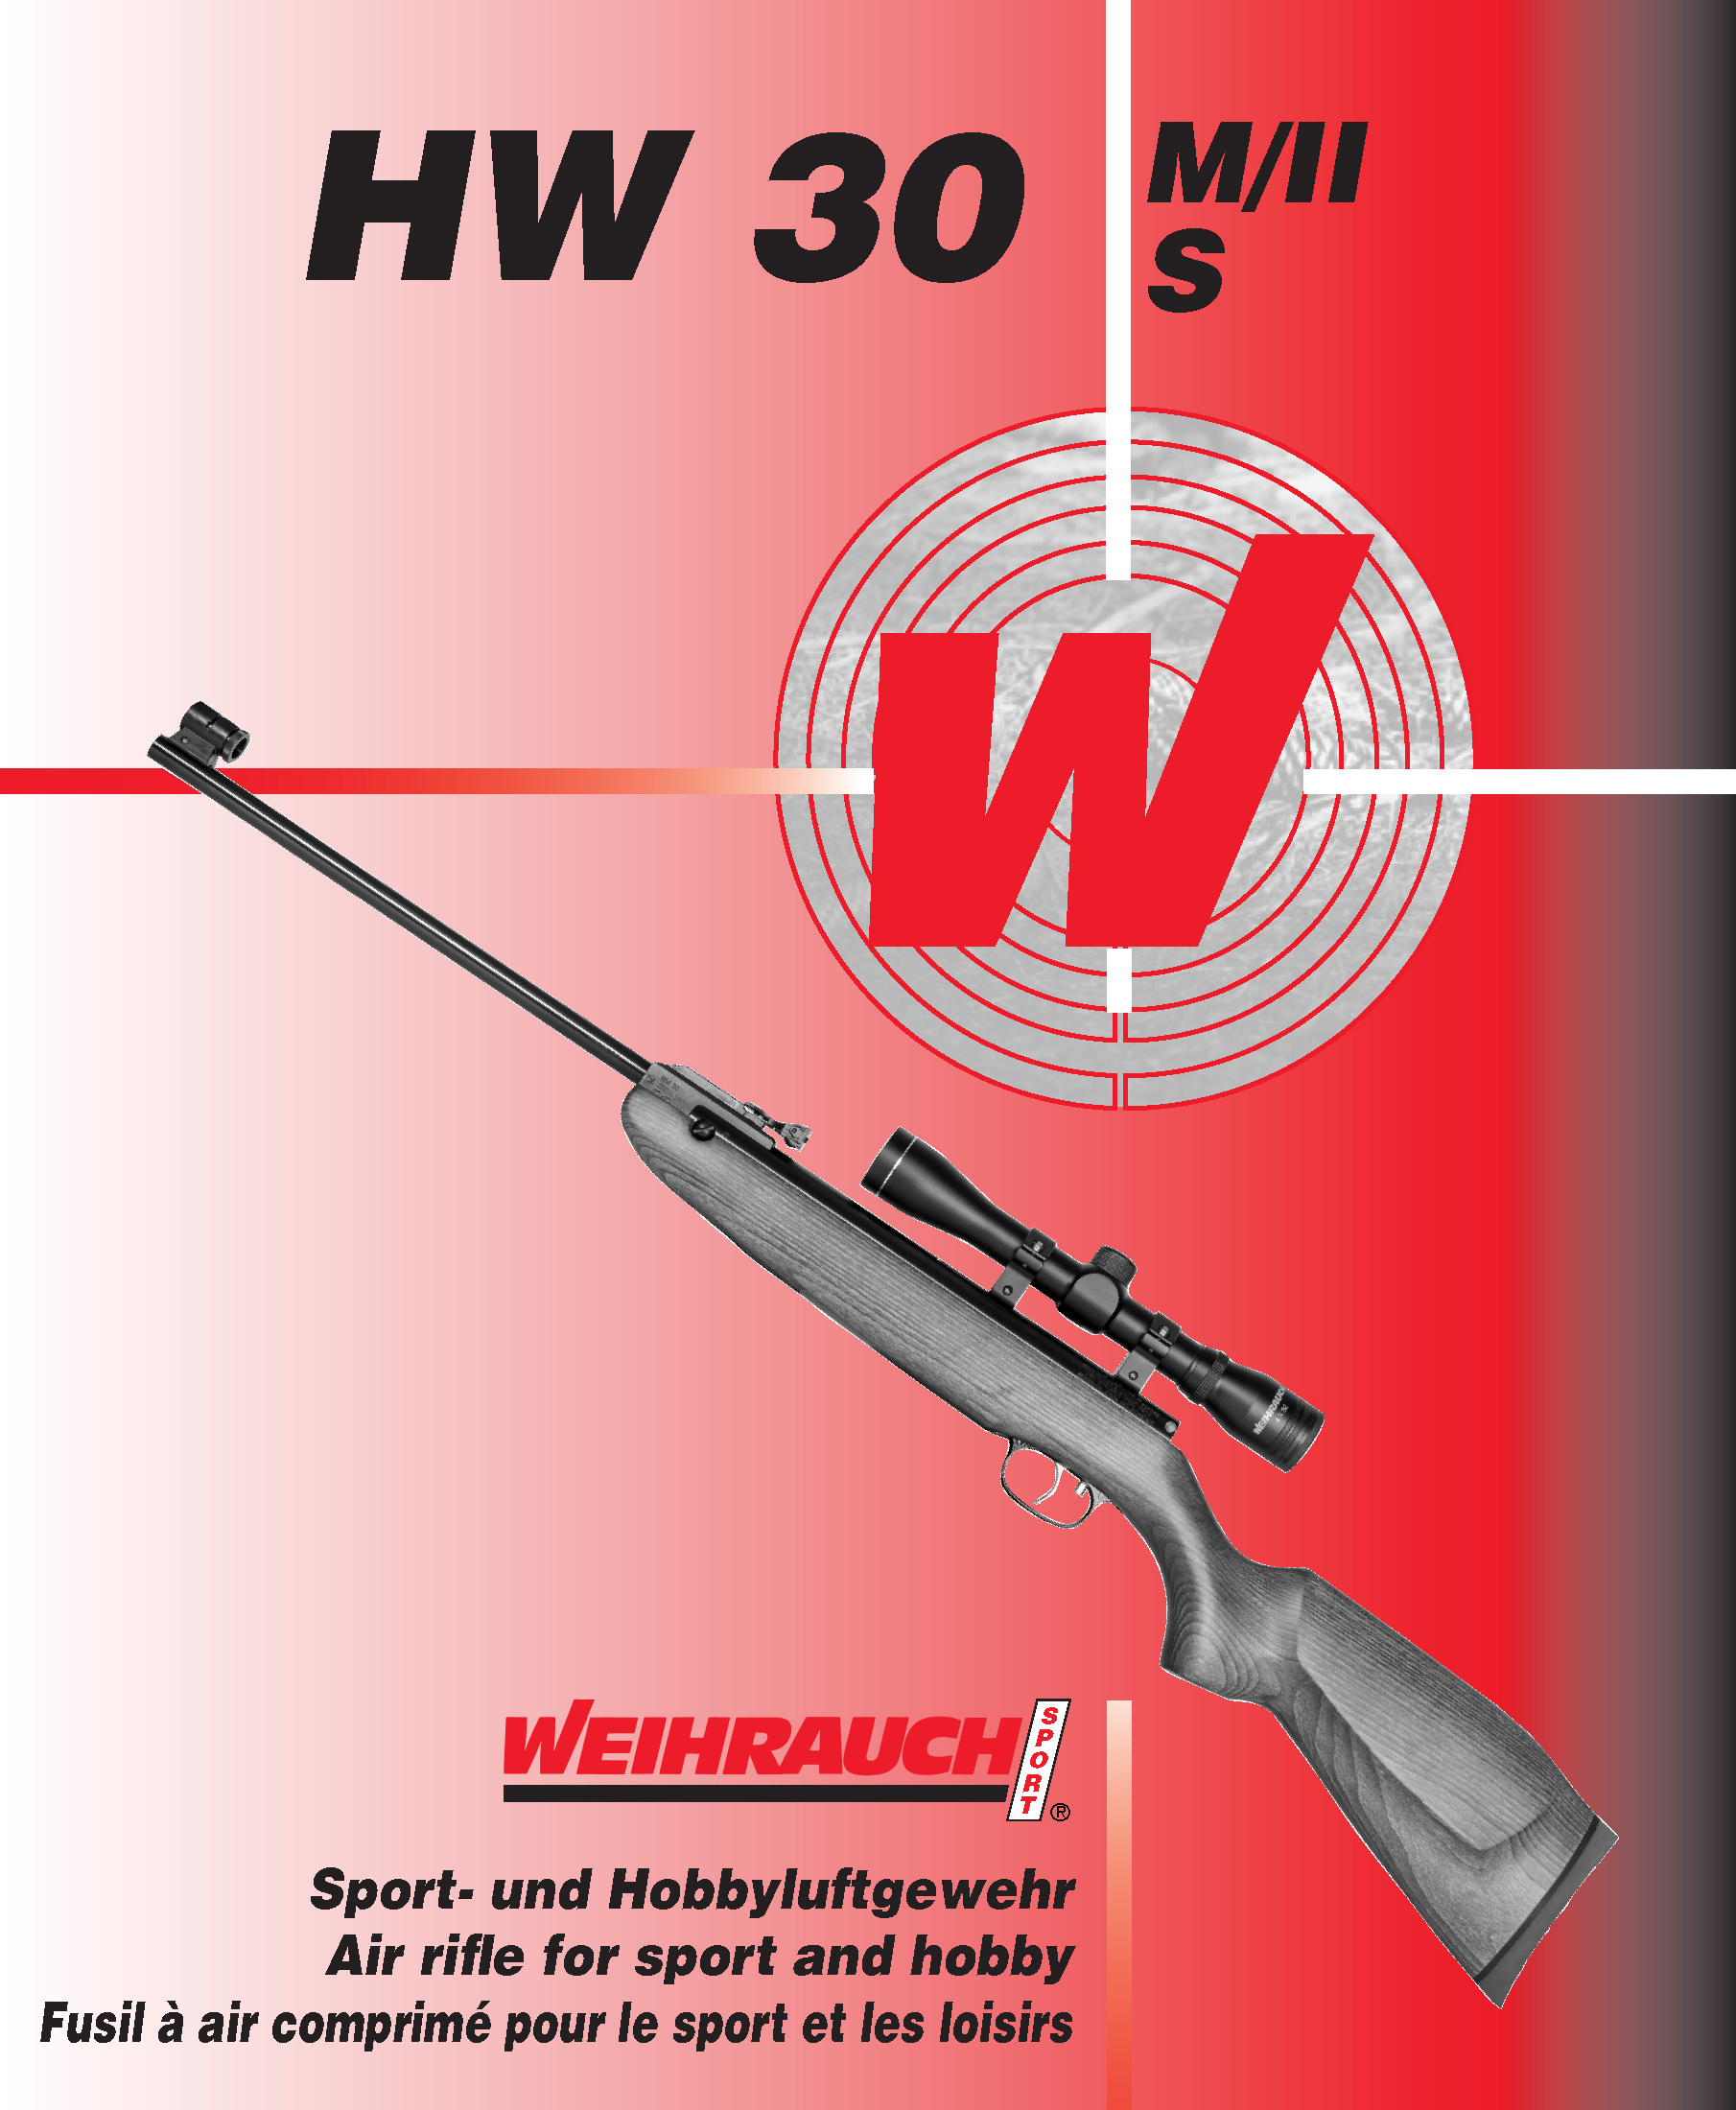 Manual WW Luftgewehr HW 30 M II bzw S 05 2015 1